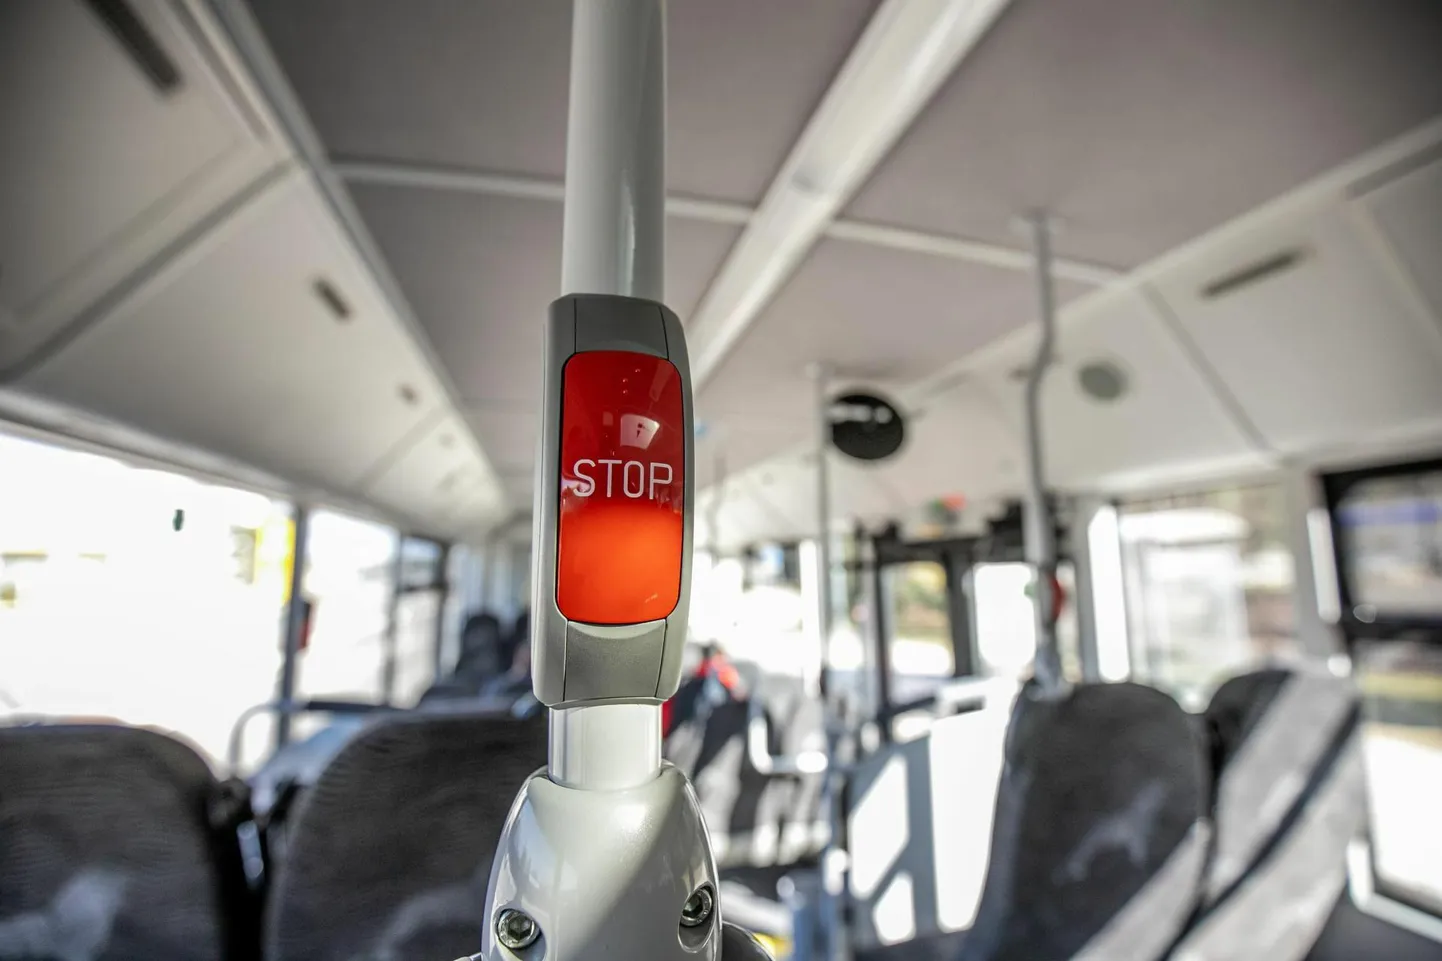 Хотя пассажирка автобуса нажала на кнопку «Стоп», вероятно, водитель по какой-то причине не получил сигнал, что человек хочет выйти.